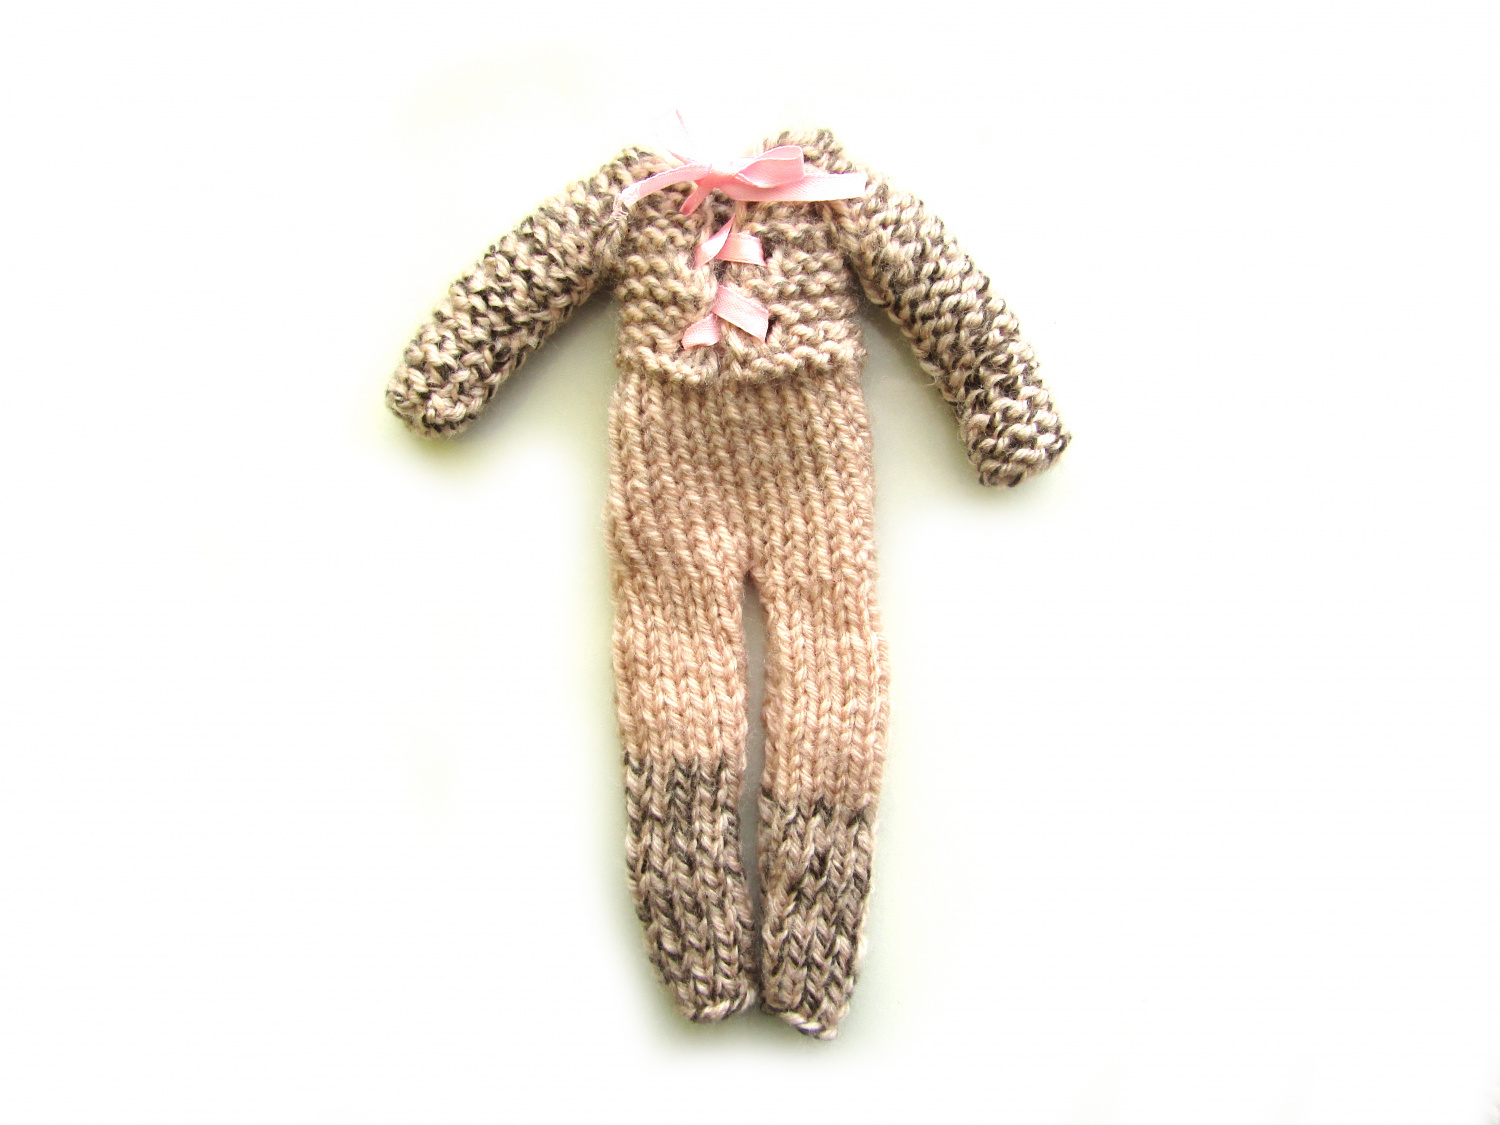 Мастер-класс: "Как связать спицами комбинезон для куклы Барби своими руками". Фото 16